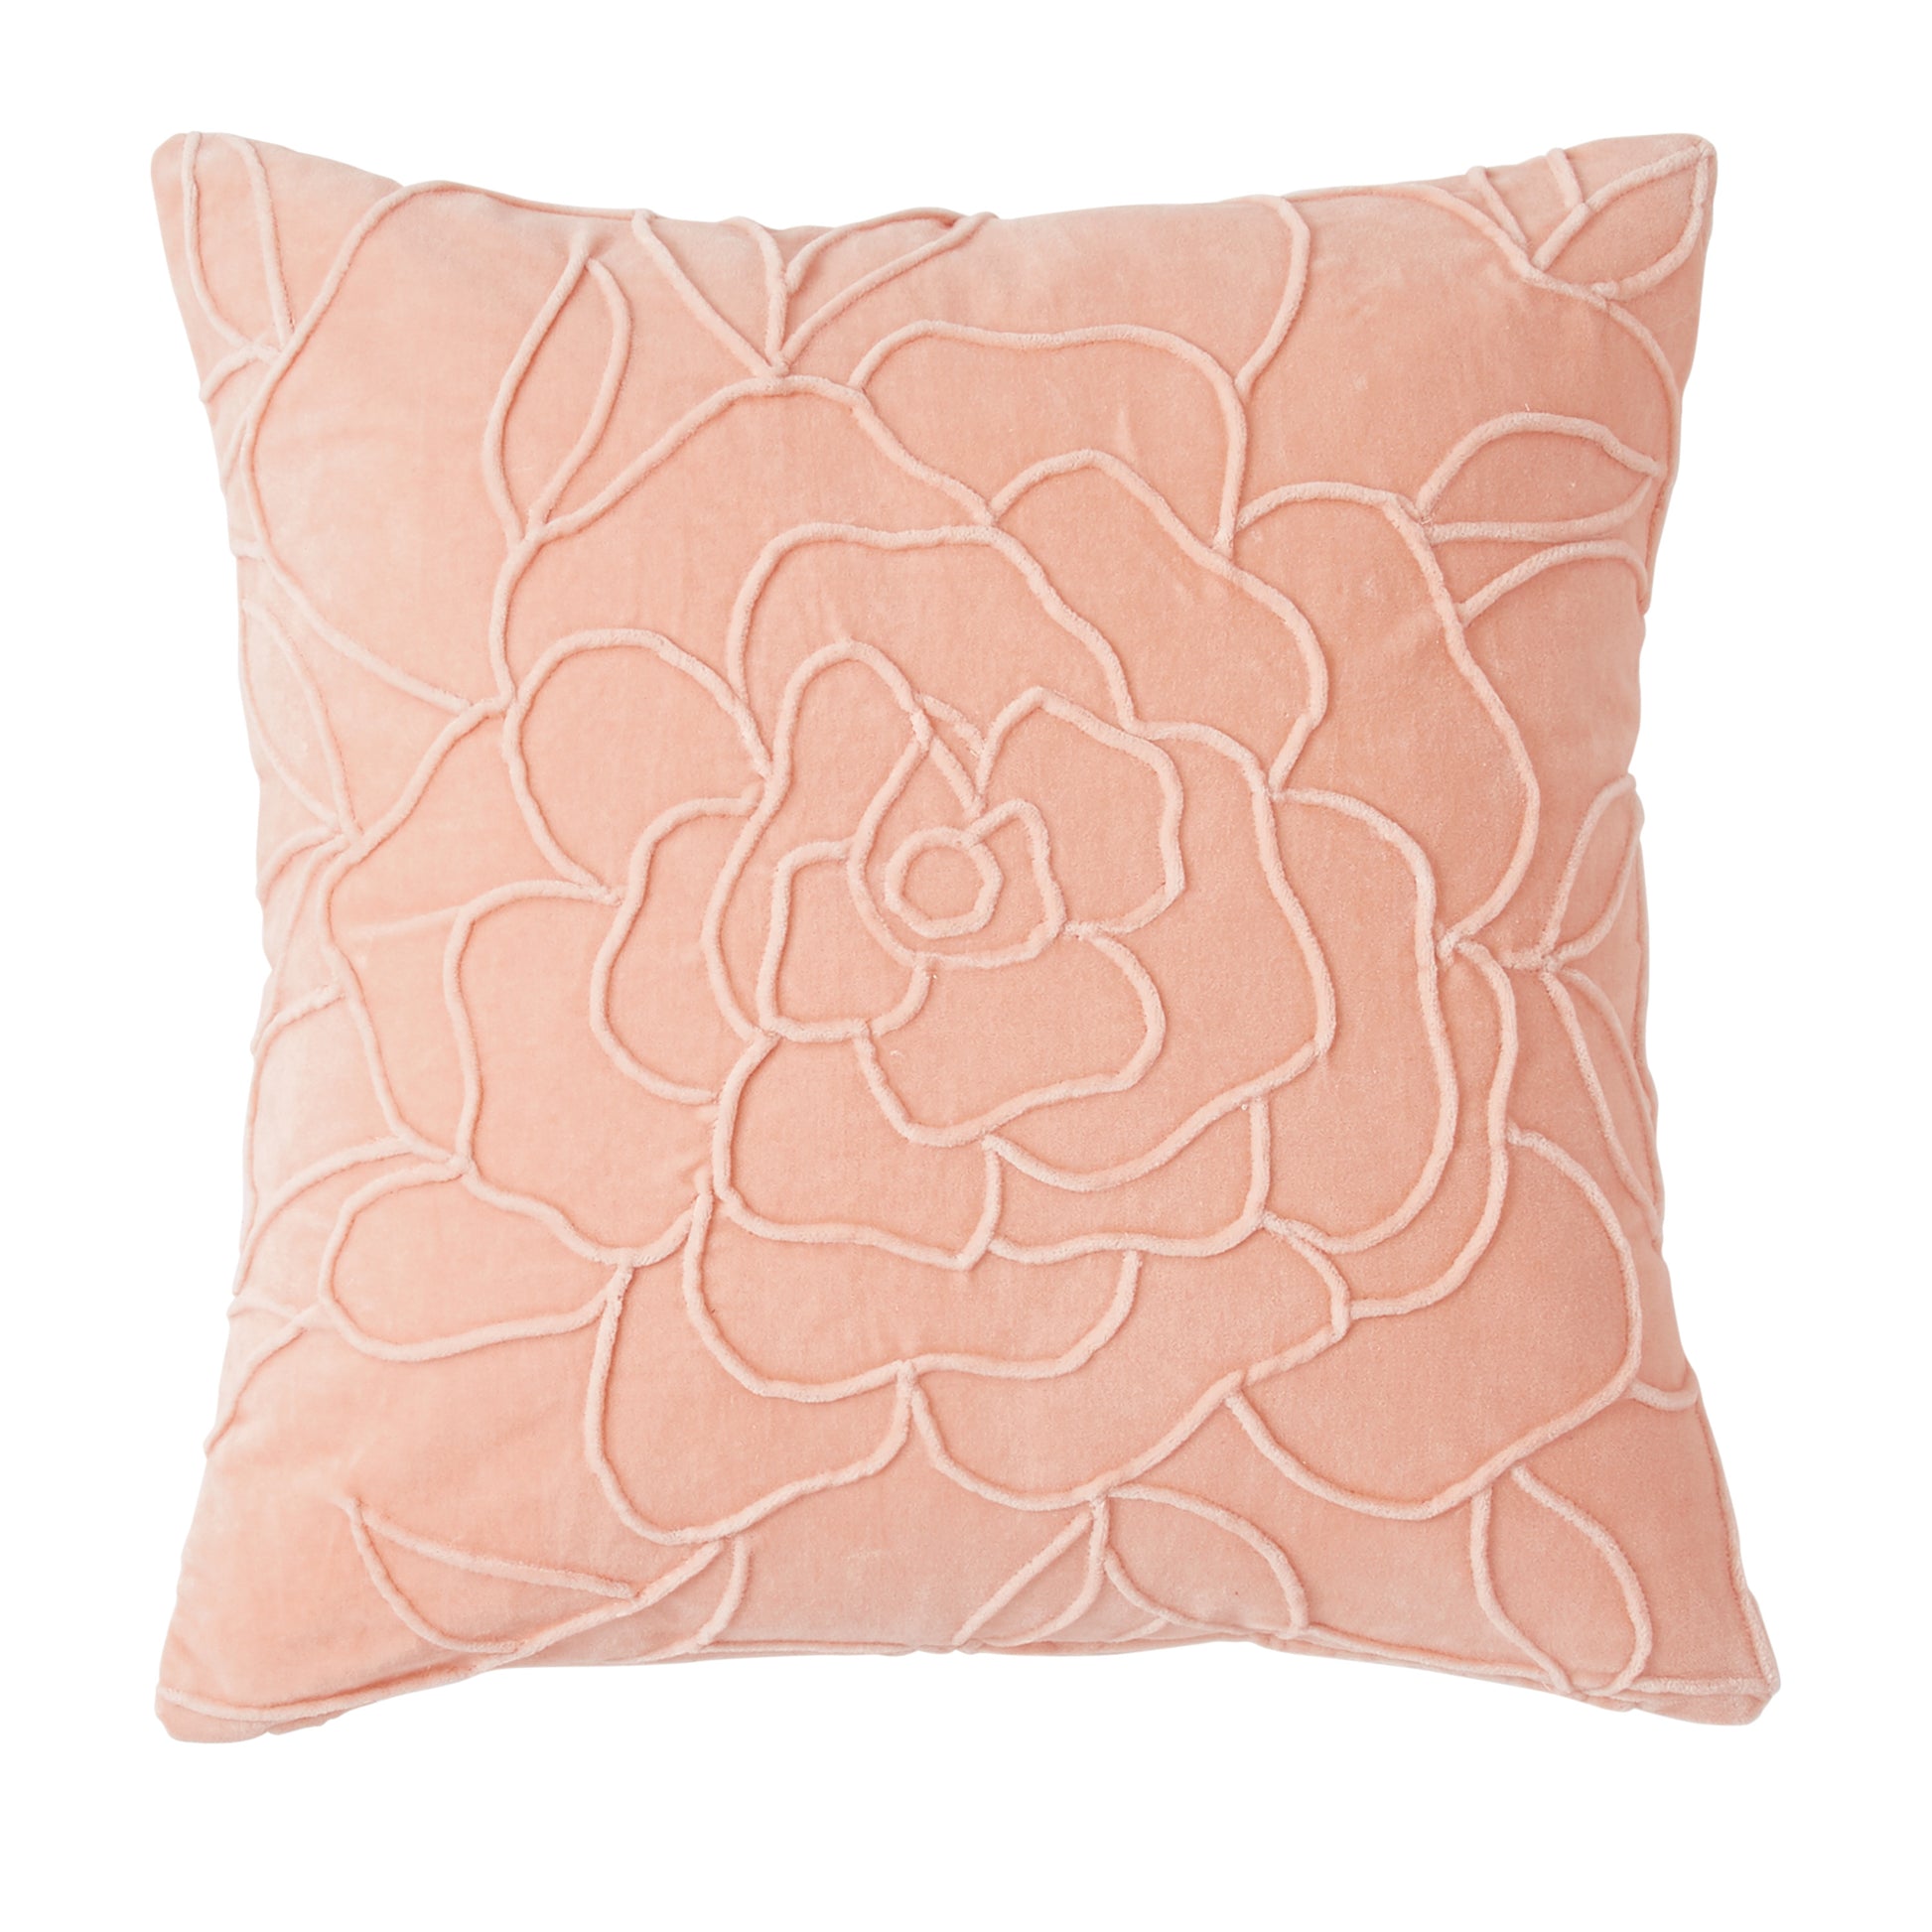 Peri Home Velvet Floral Decorative Pillow